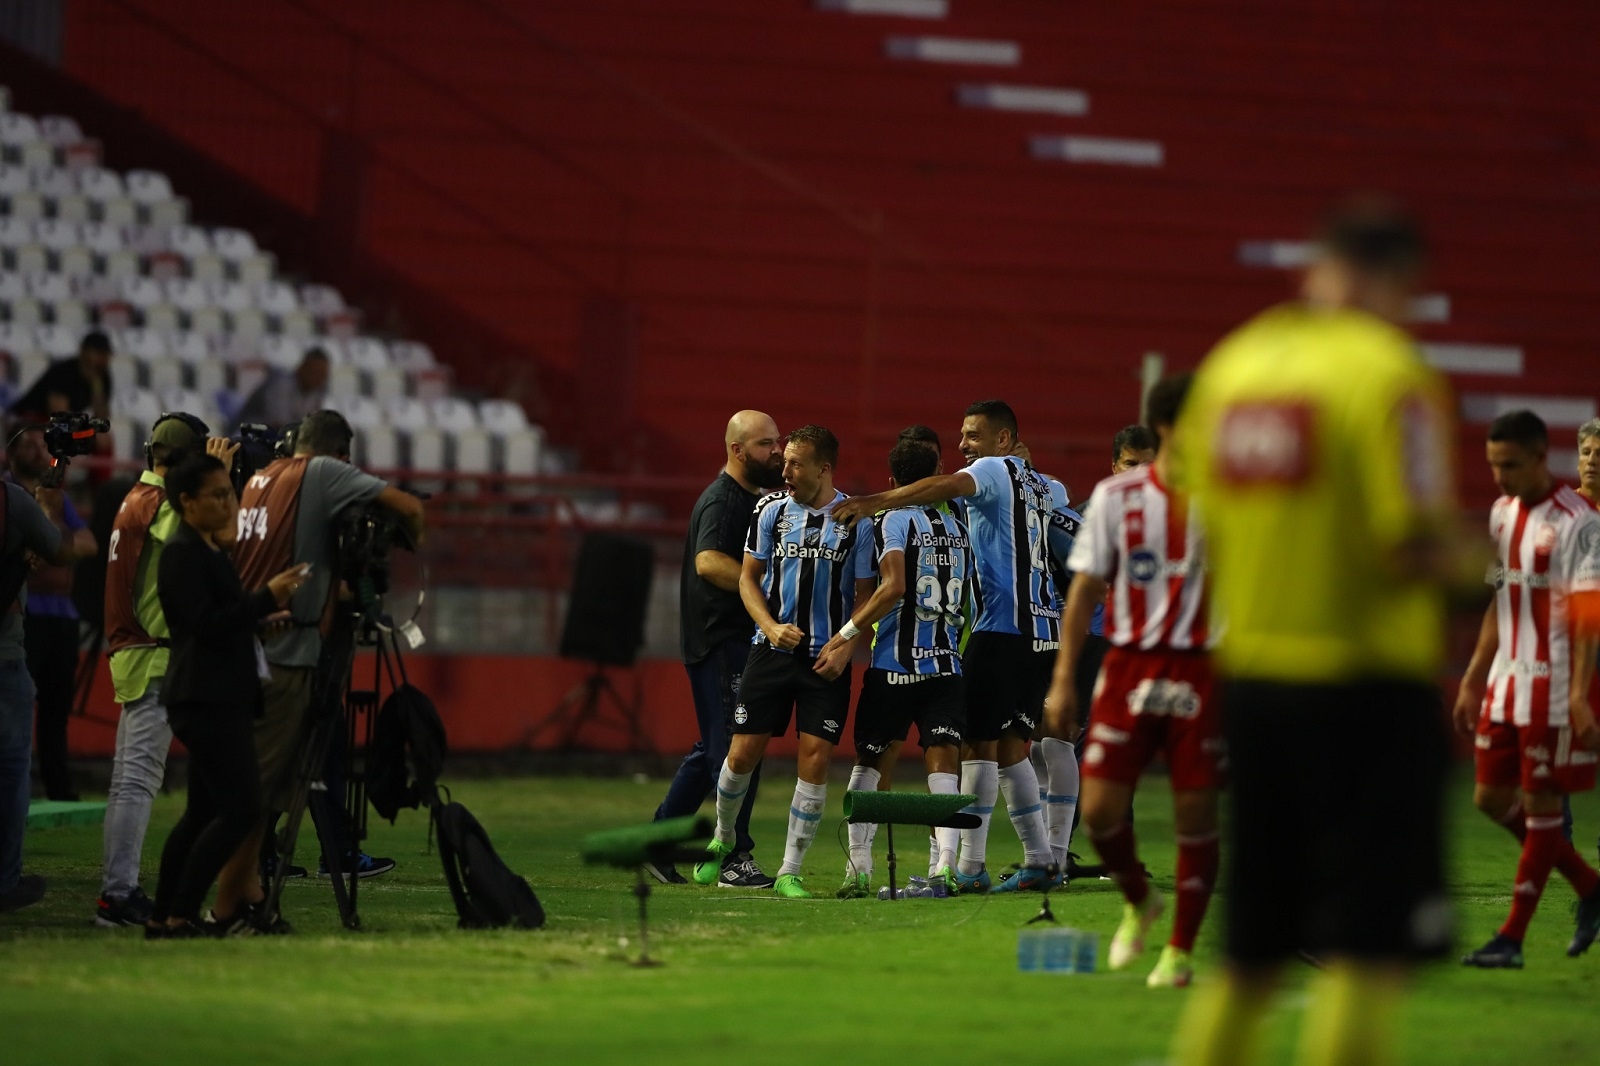 Grêmio comunica a venda do atleta Bitello